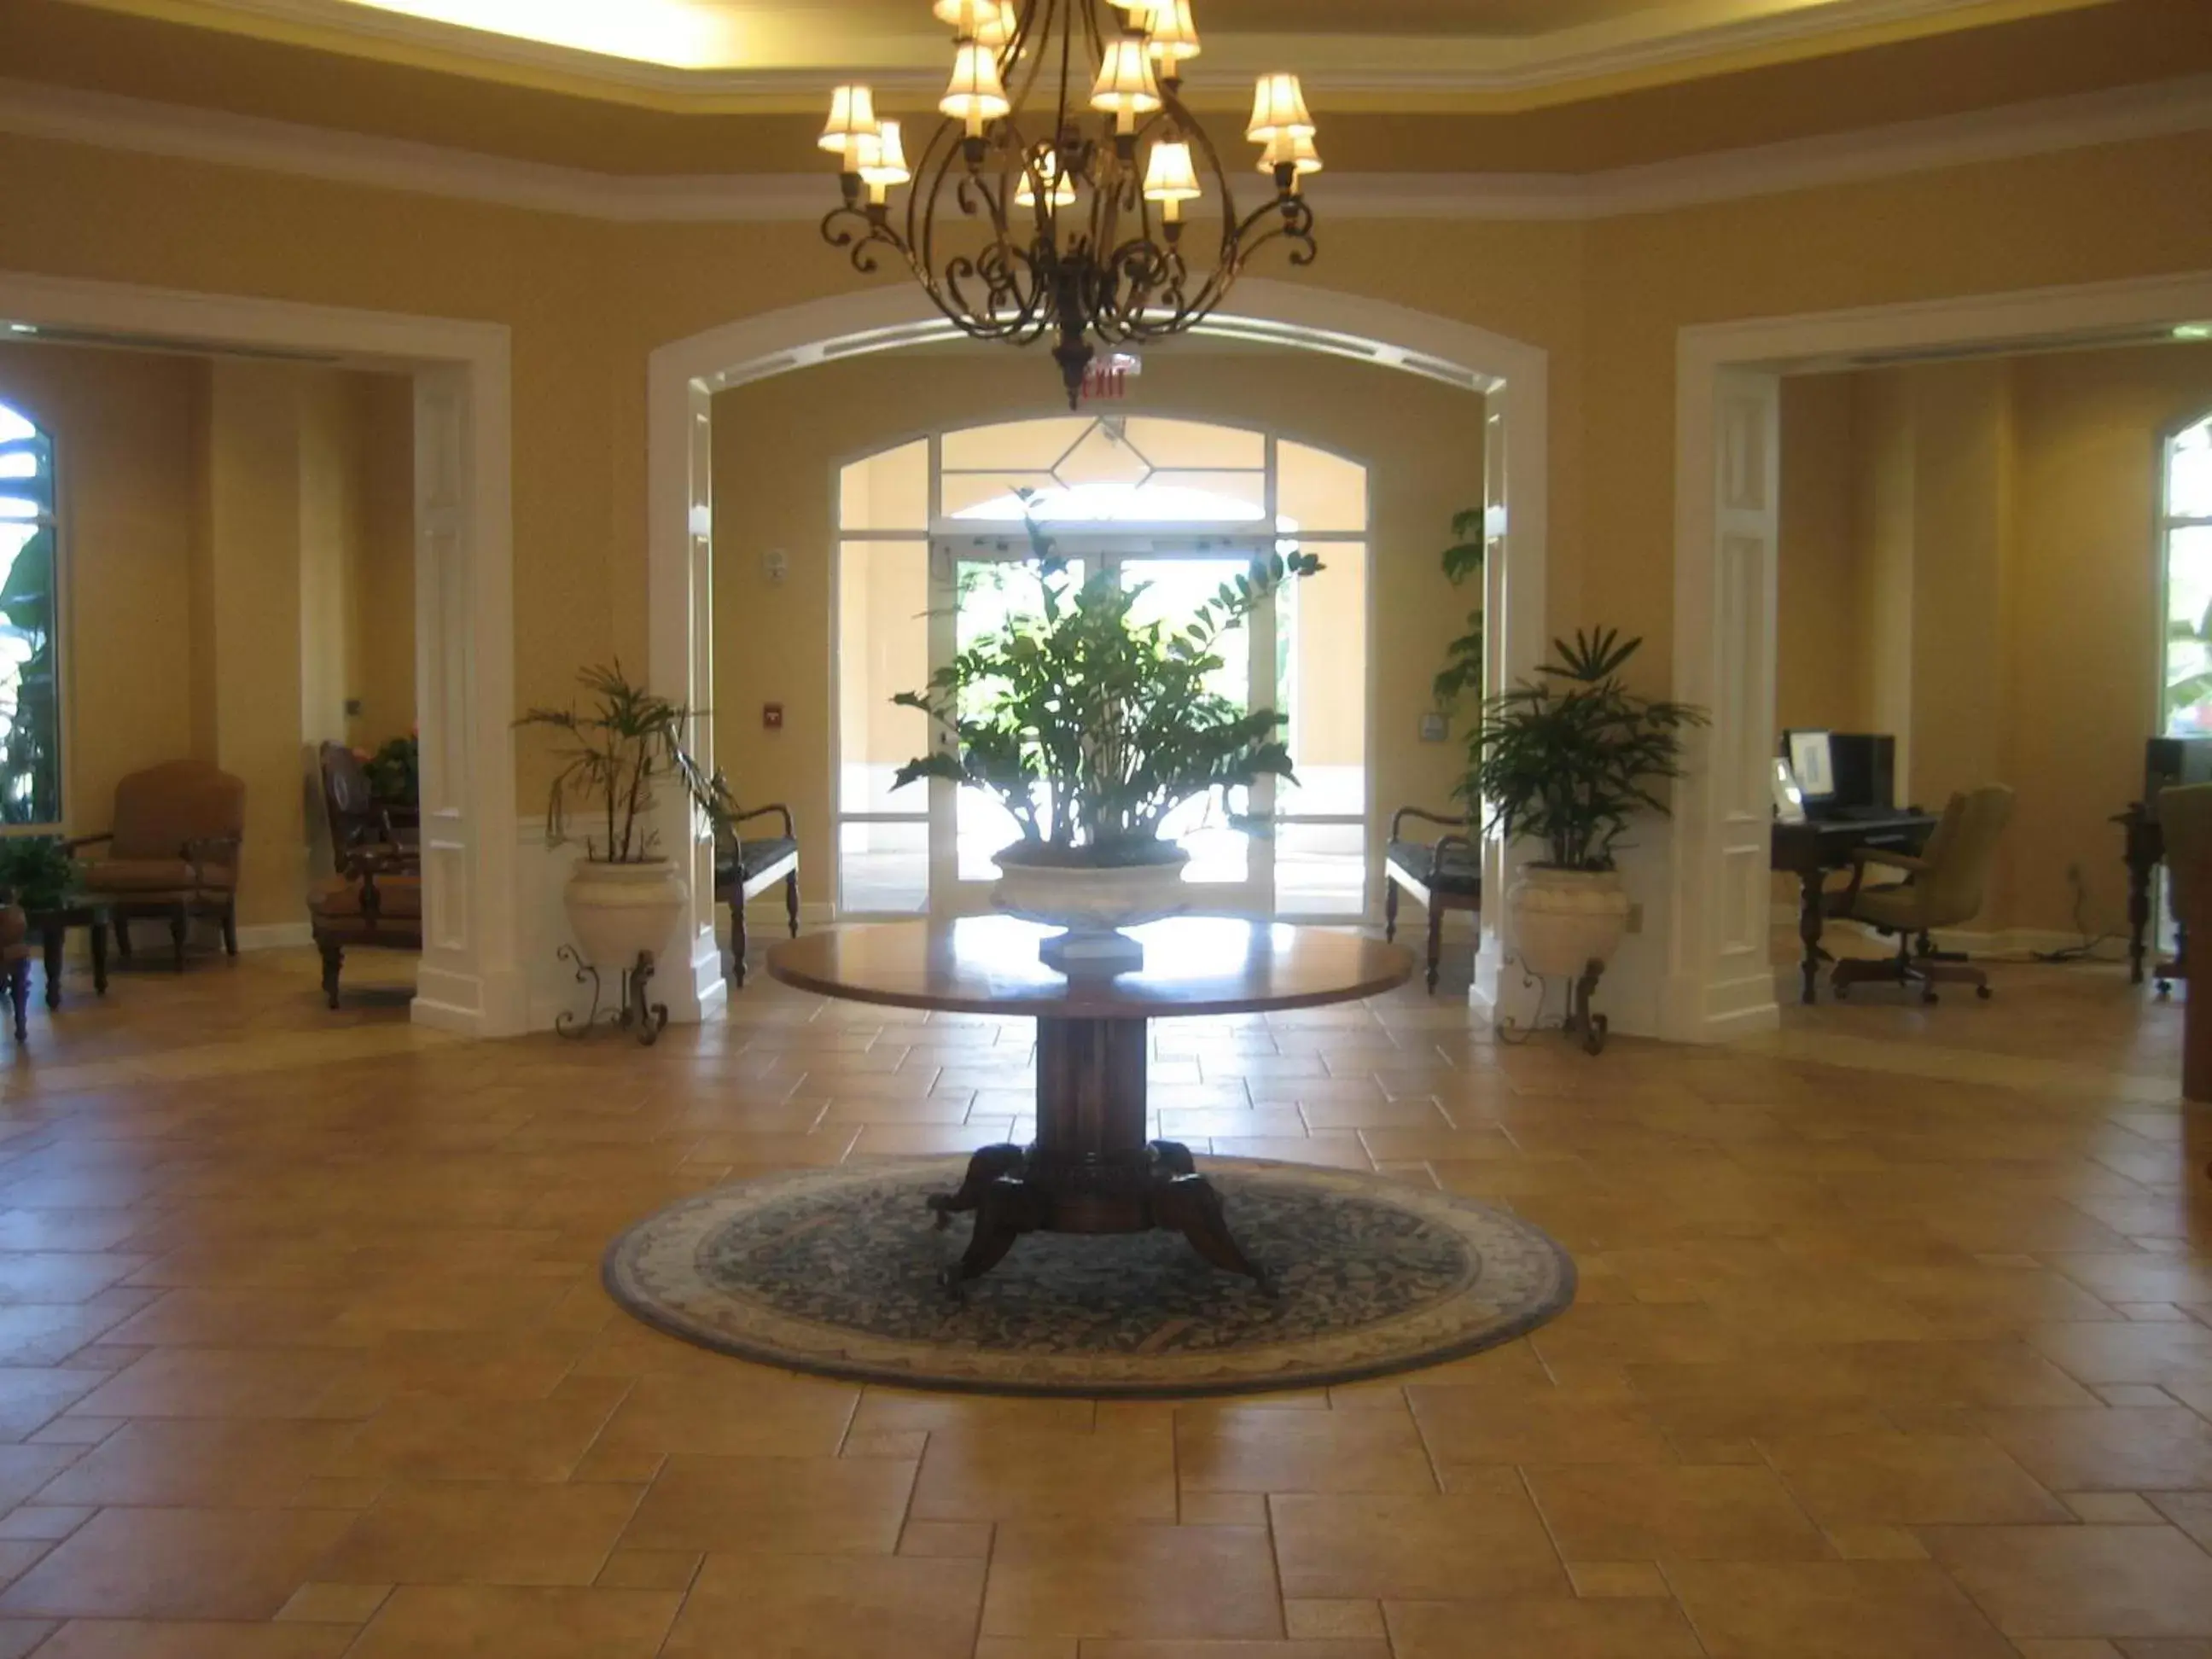 Lobby or reception, Lobby/Reception in Monumental Hotel Orlando